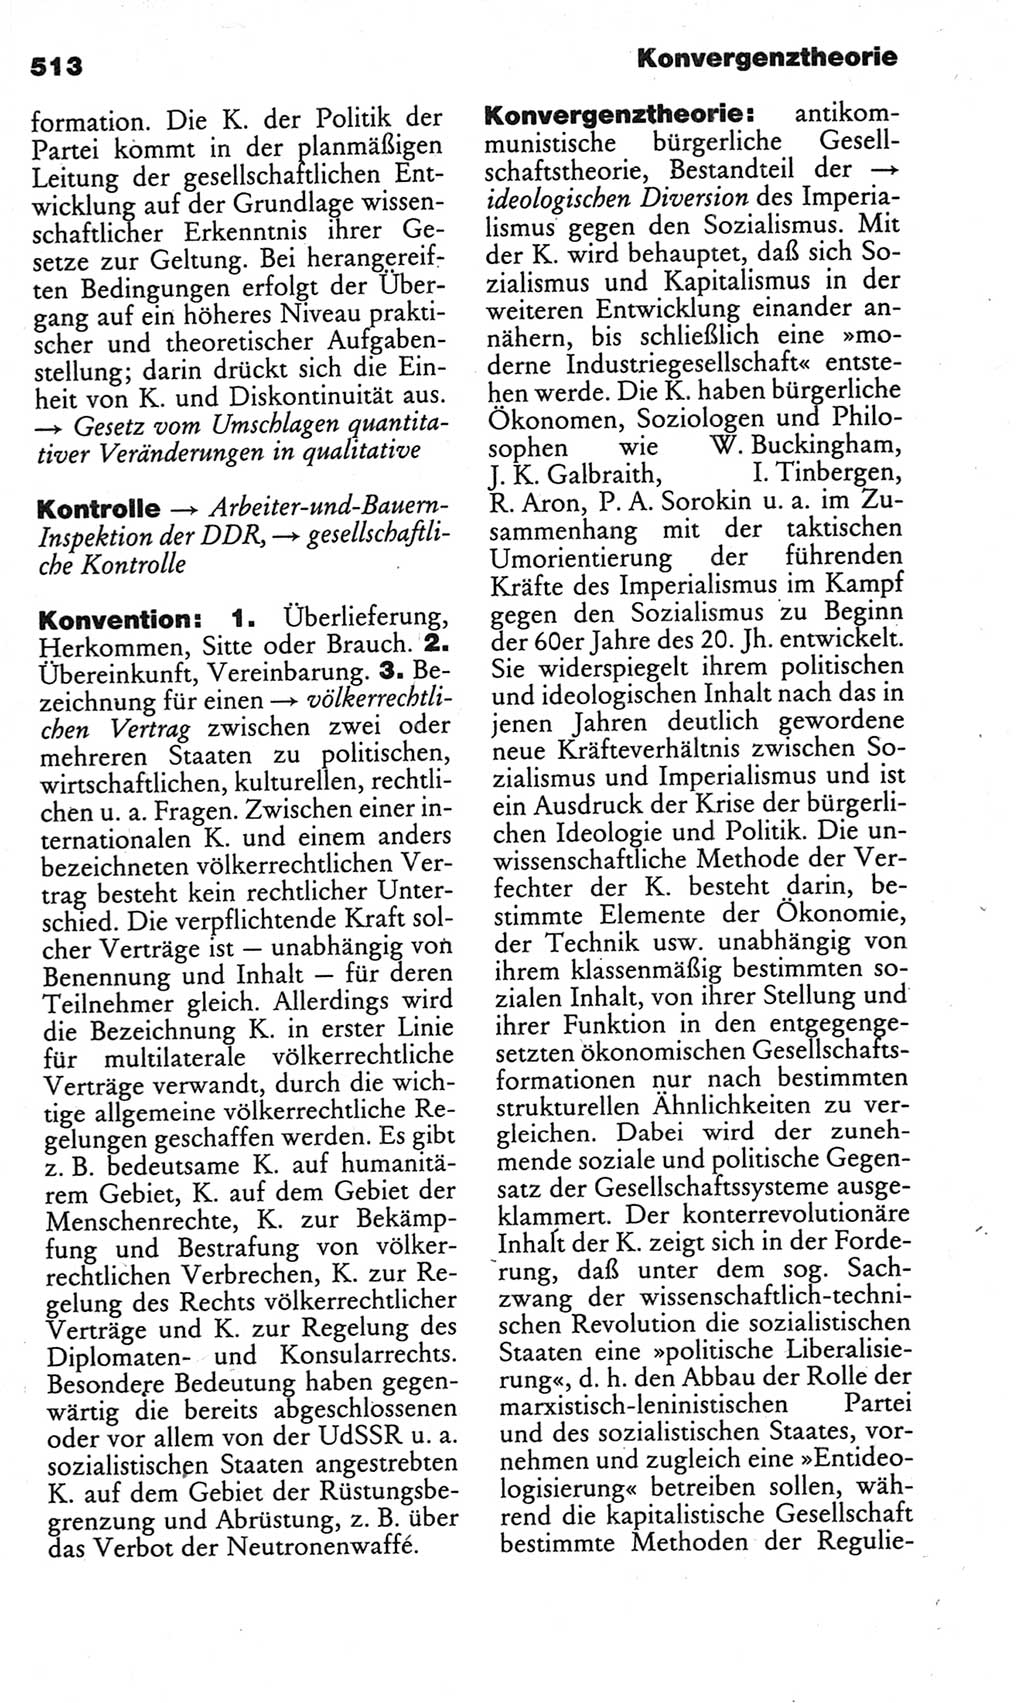 Kleines politisches Wörterbuch [Deutsche Demokratische Republik (DDR)] 1986, Seite 513 (Kl. pol. Wb. DDR 1986, S. 513)